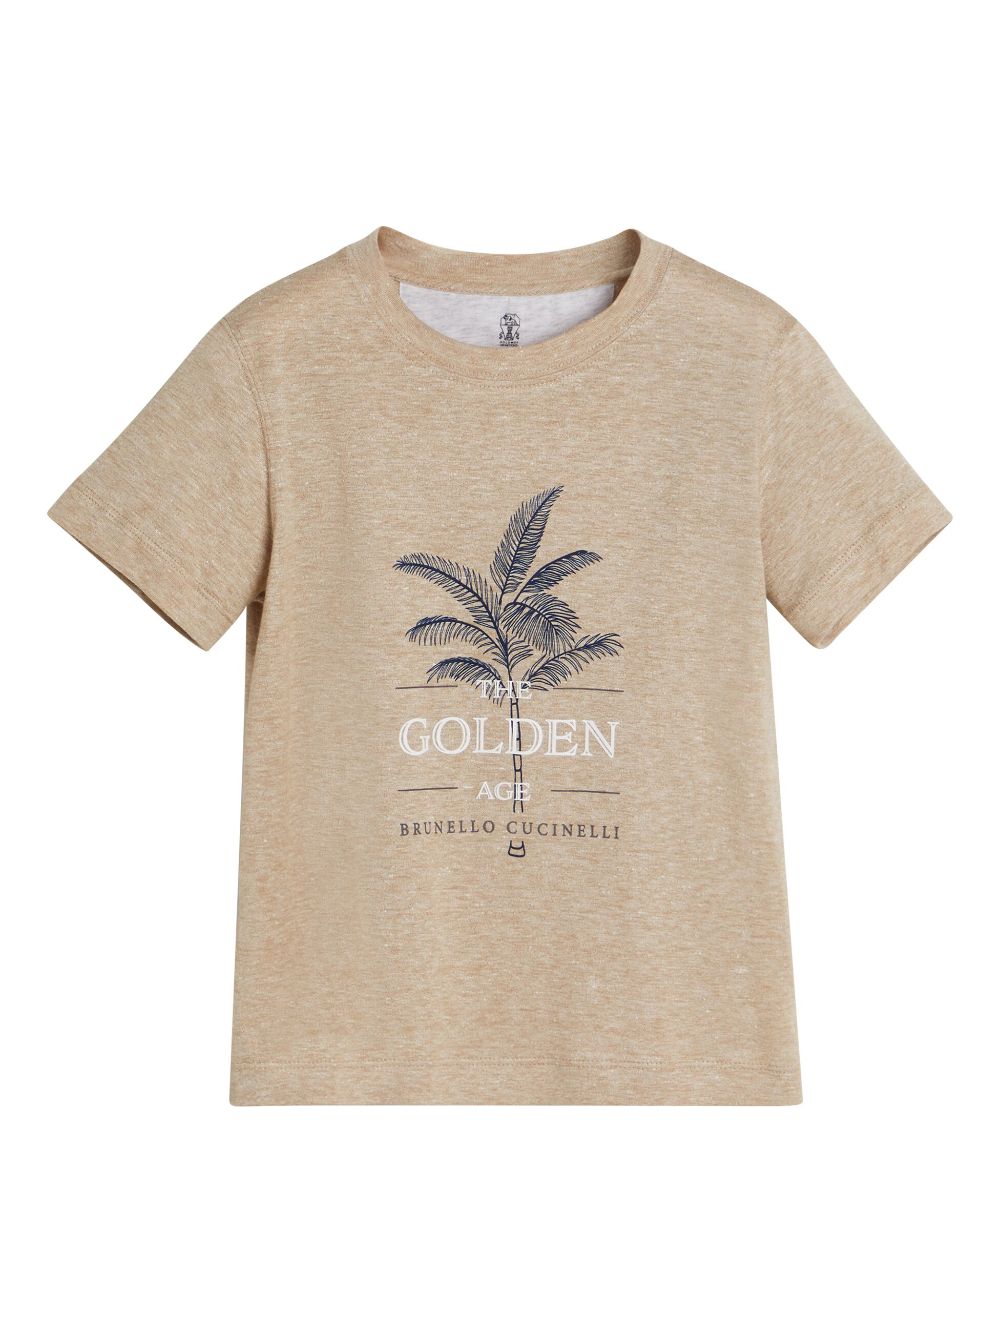 T-shirt sabbia bambino